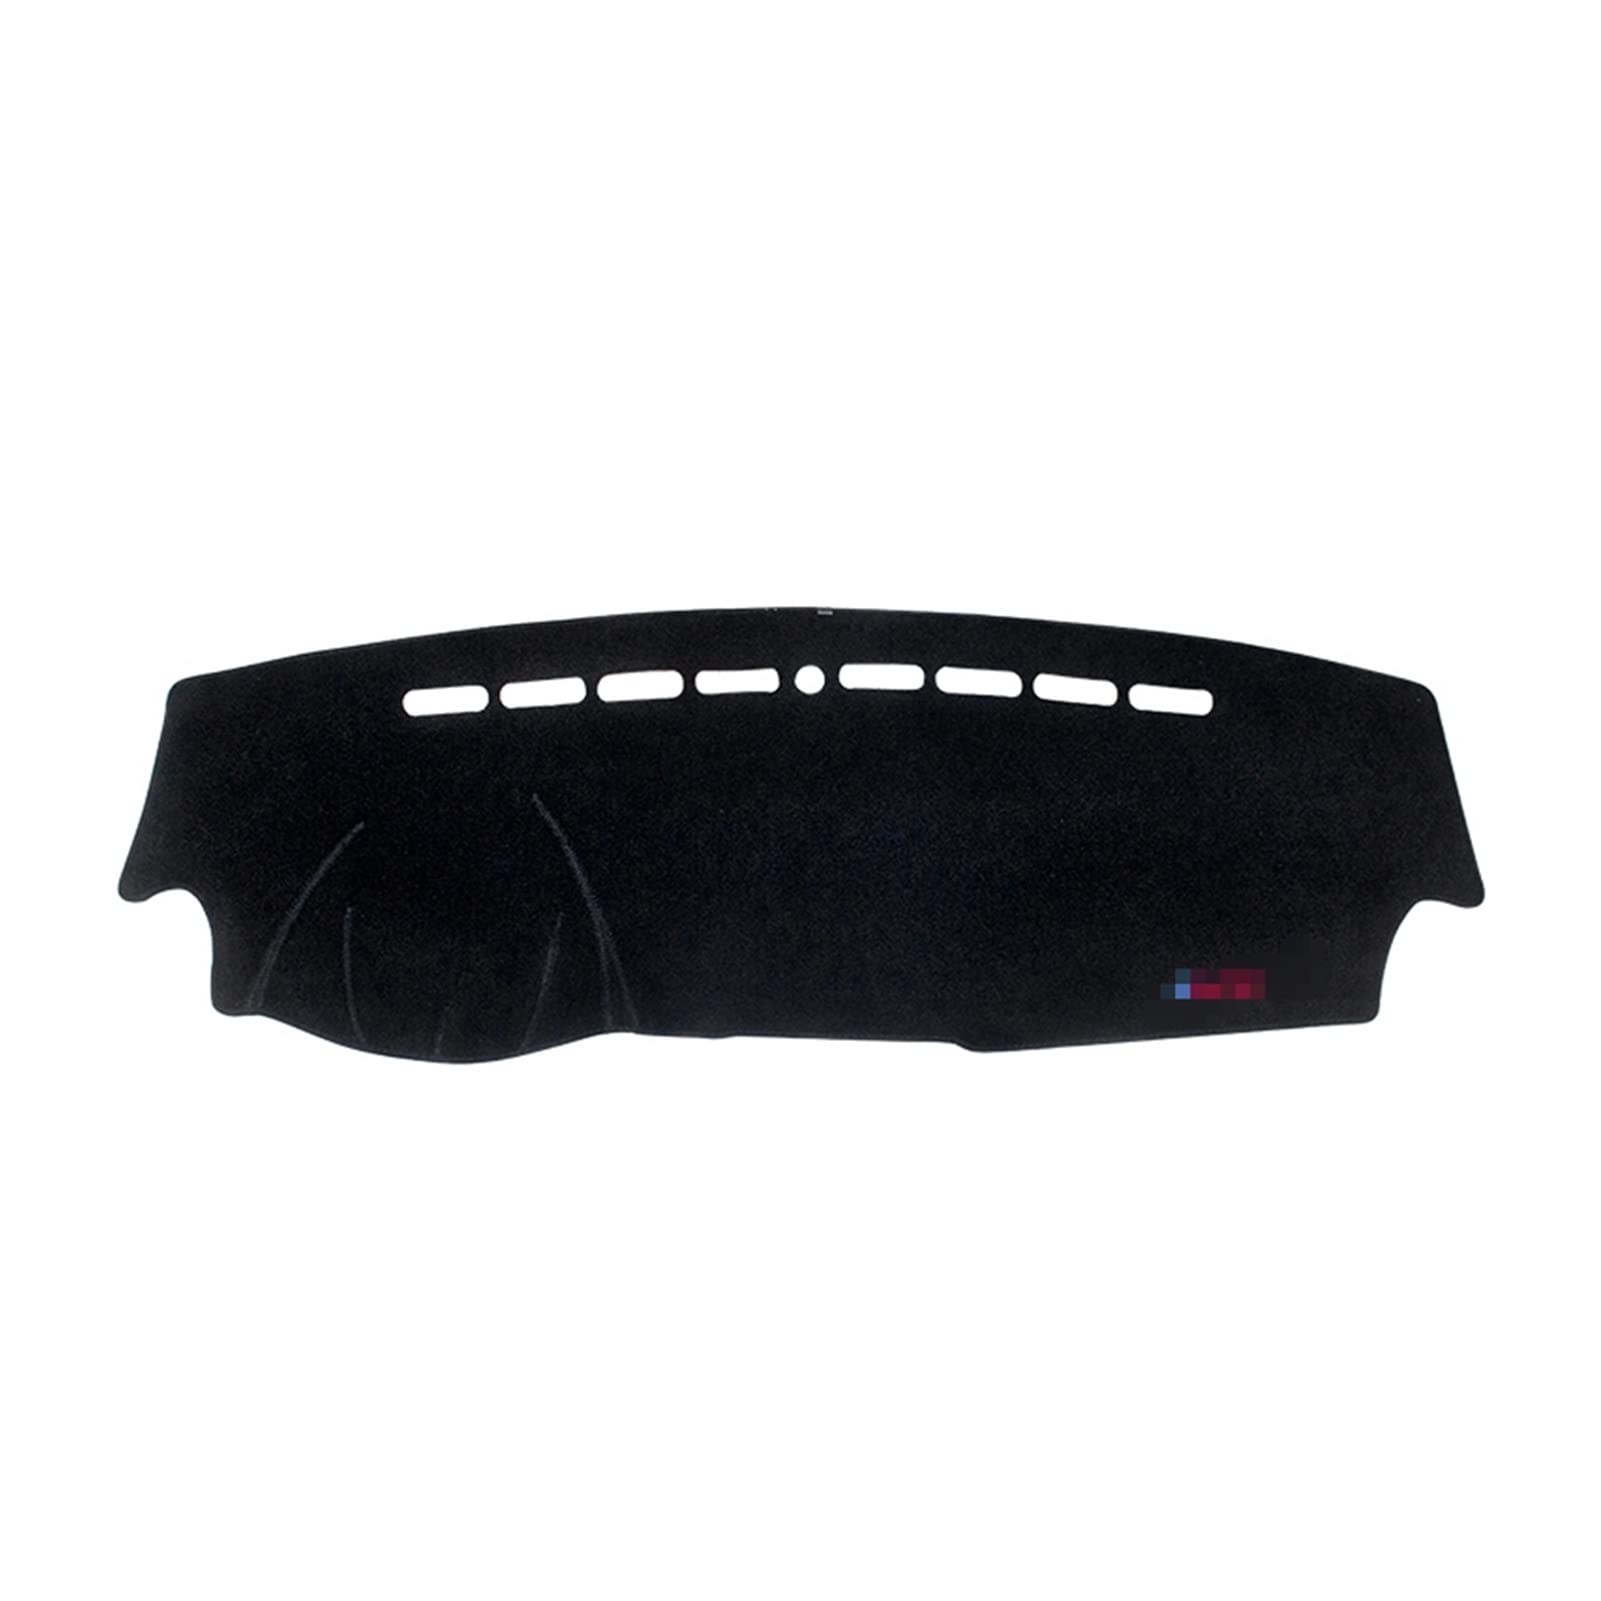 Für MG HS 2018 2019 2020 2021 Auto Abdeckung Matte Sonnenschutz Pad Teppiche Anti-UV-Schutz Dash Abdeckungs Matte(Black Side) von DZSFSTRHRRT